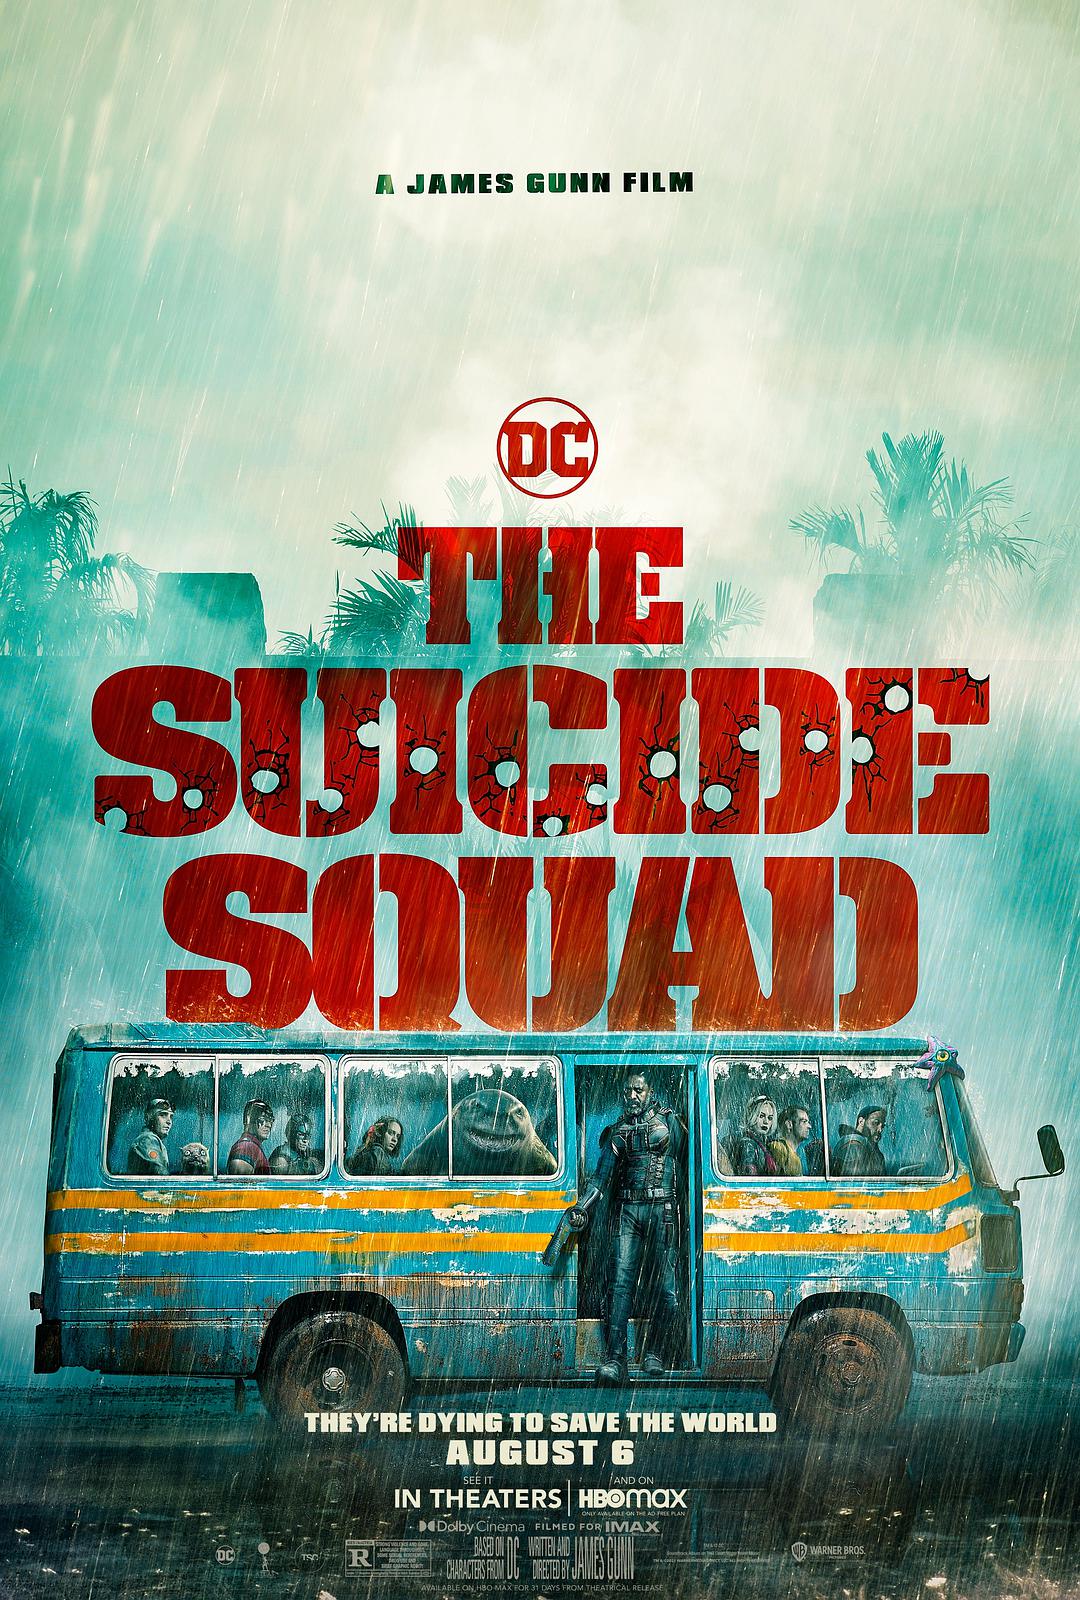 X特遣队：全员集结 4K蓝光原盘下载+高清MKV版/新自杀小队 / 自杀特攻(港) / 自杀突击队集结(台) / 自杀小队2 / X特遣队2 / 自杀突击队2 / Suicide Squad 2 2021 The Suicide Squad 17.4G